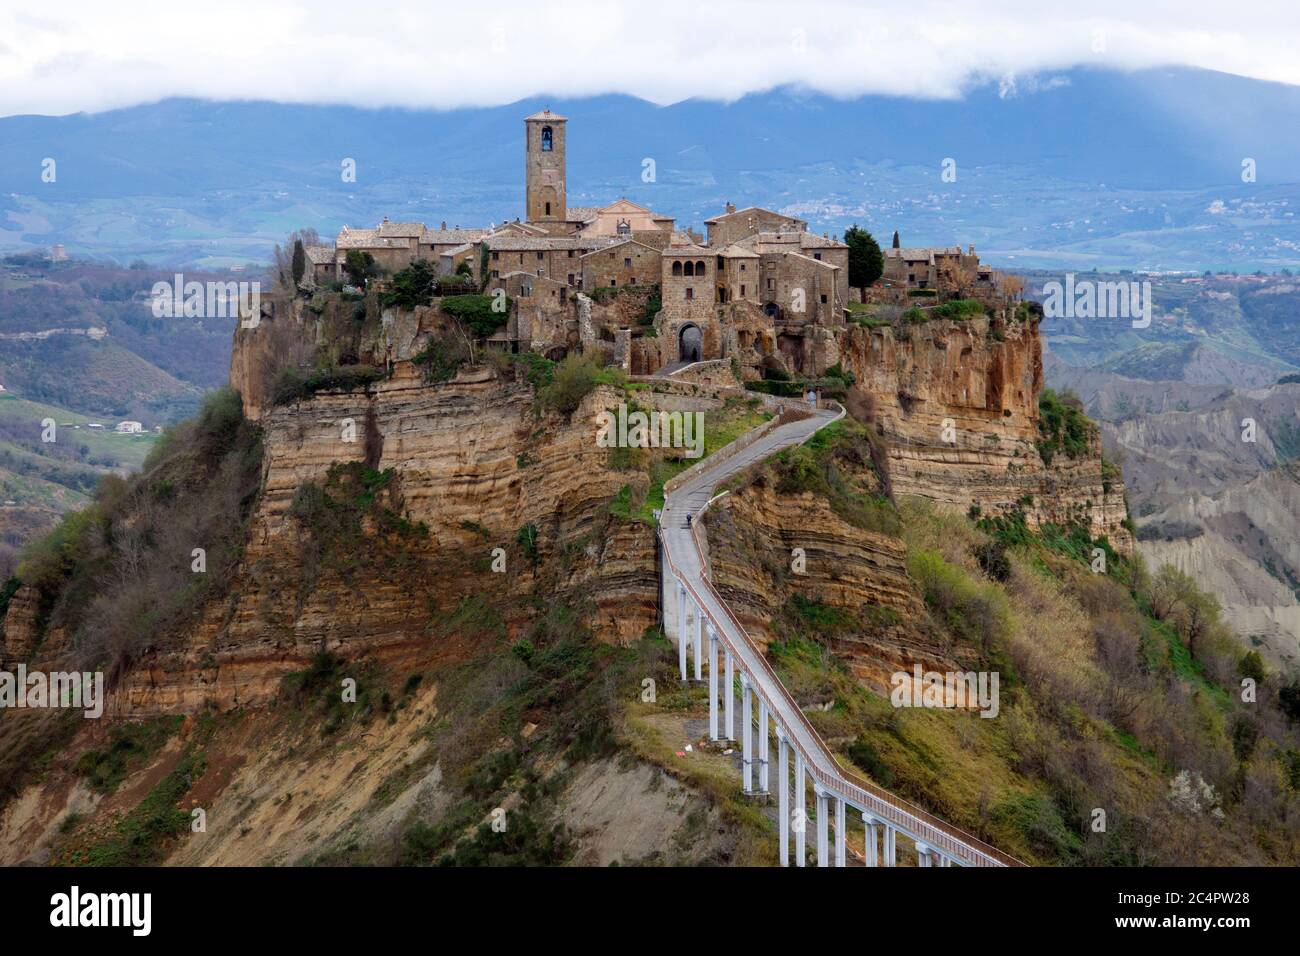 Vue panoramique de Civita di Bagnoregio, ancien village étrusque accessible uniquement par une passerelle, province de Viterbo, Latium, Italie Banque D'Images